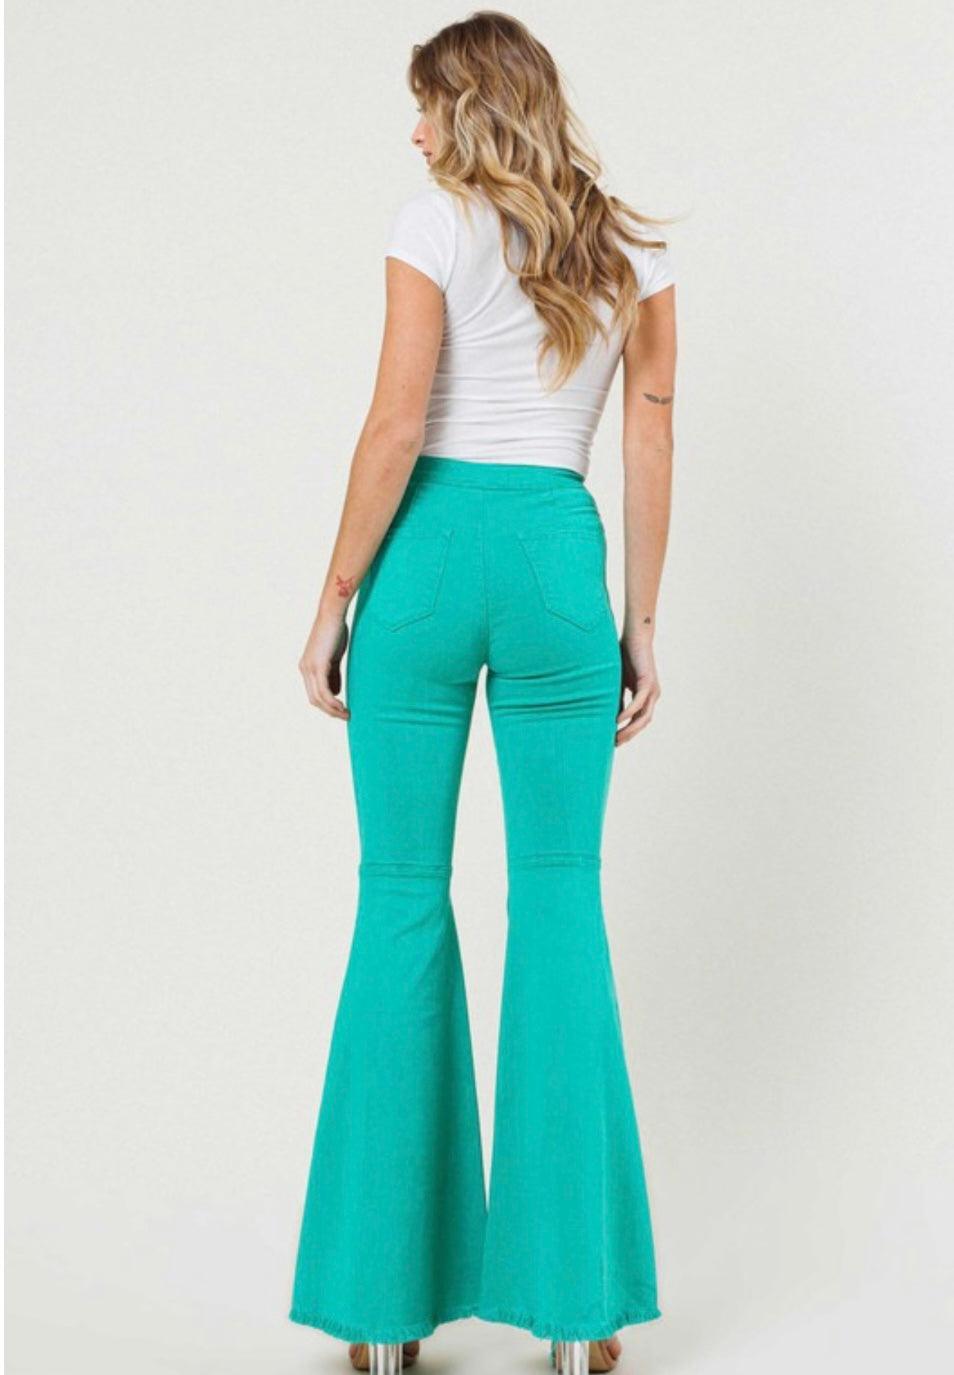 Green Distressed Flare Denim Pants - BeLoved Boutique 